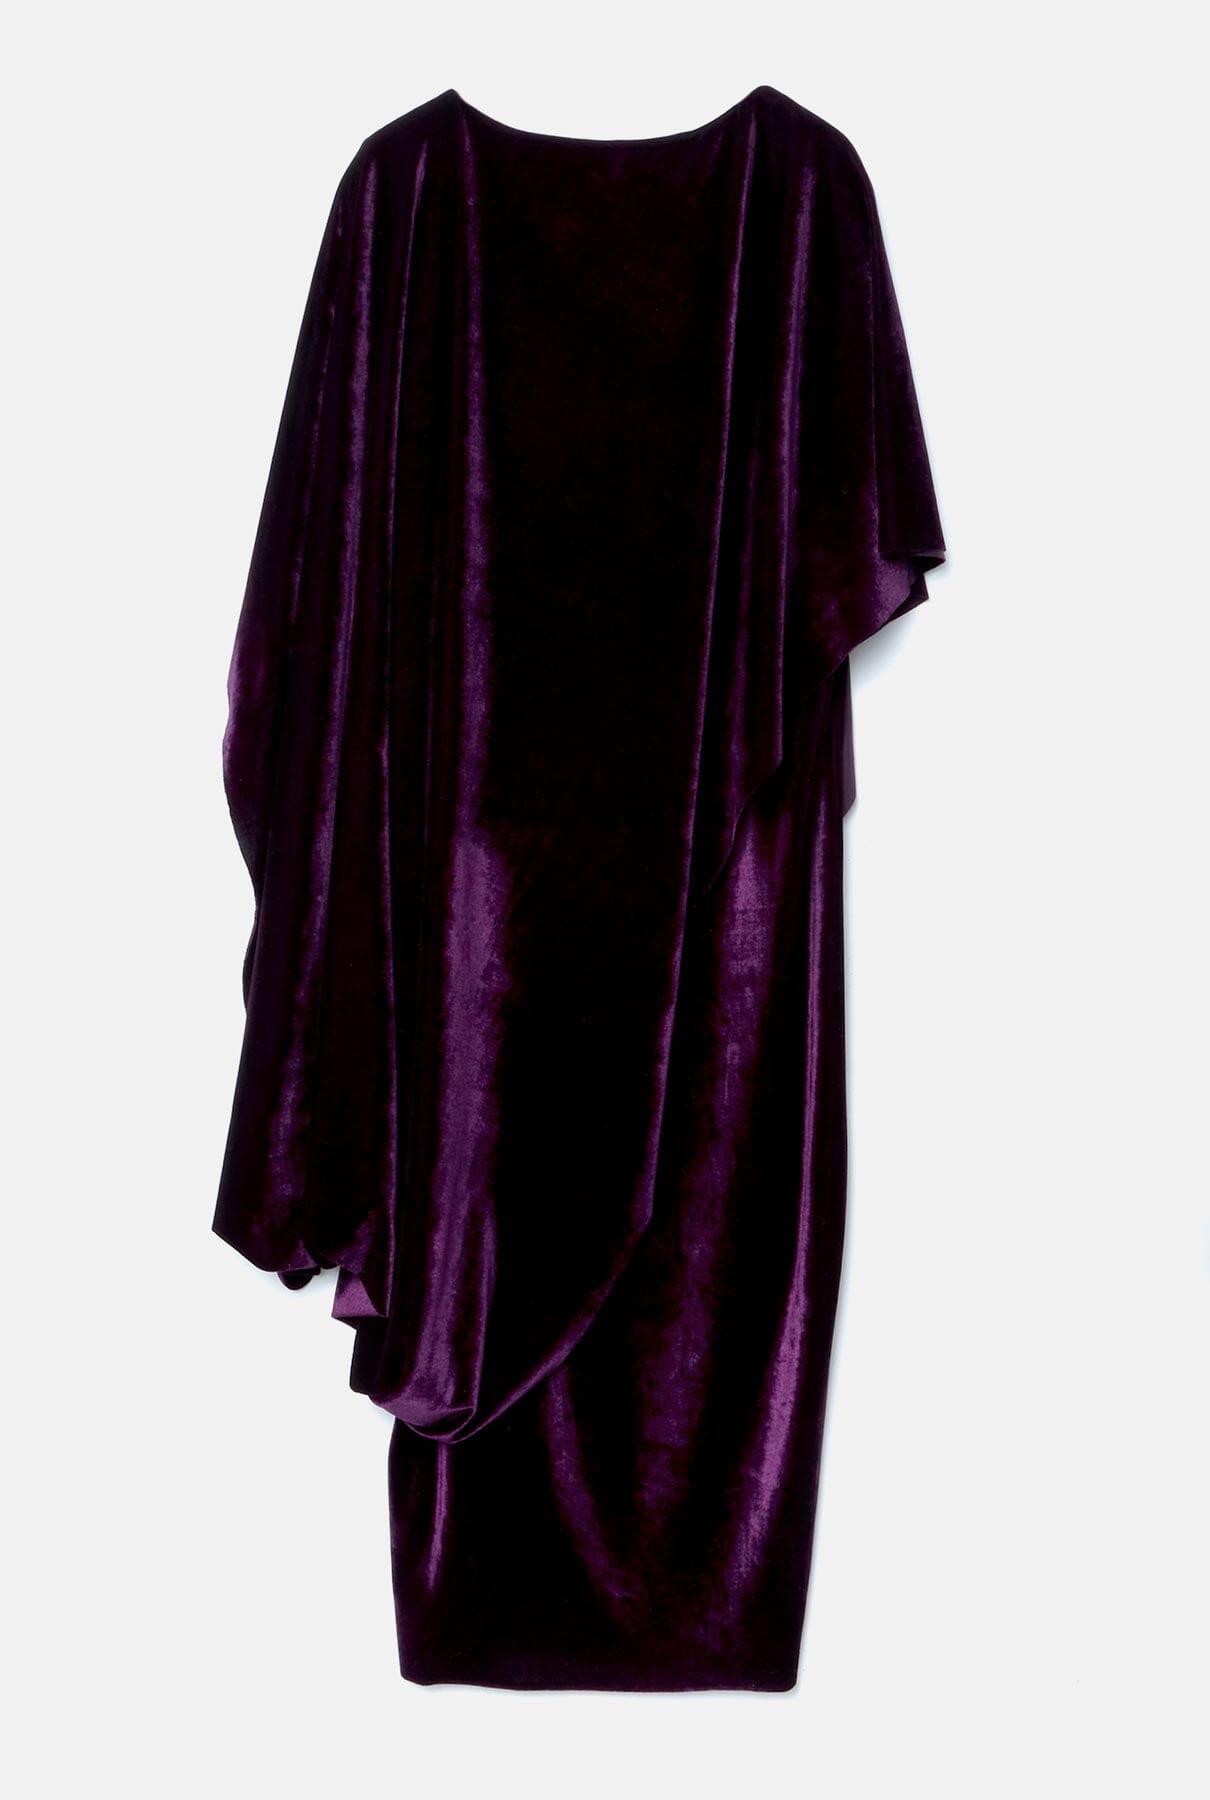 Marlene Terciopelo Dress Purple Dresses Duyos 